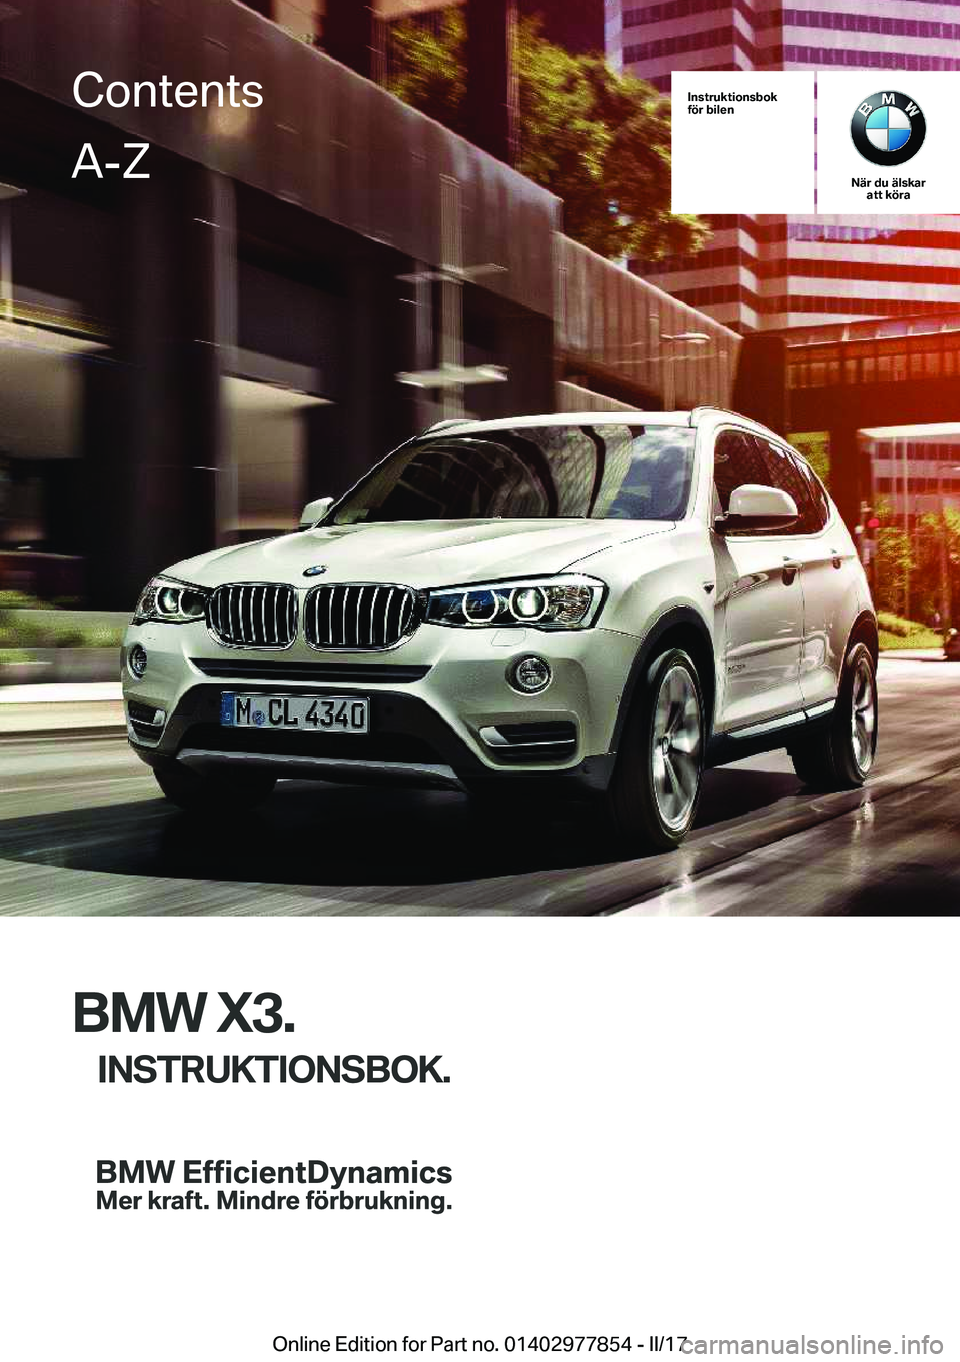 BMW X3 2017  InstruktionsbÖcker (in Swedish) �I�n�s�t�r�u�k�t�i�o�n�s�b�o�k
�f�